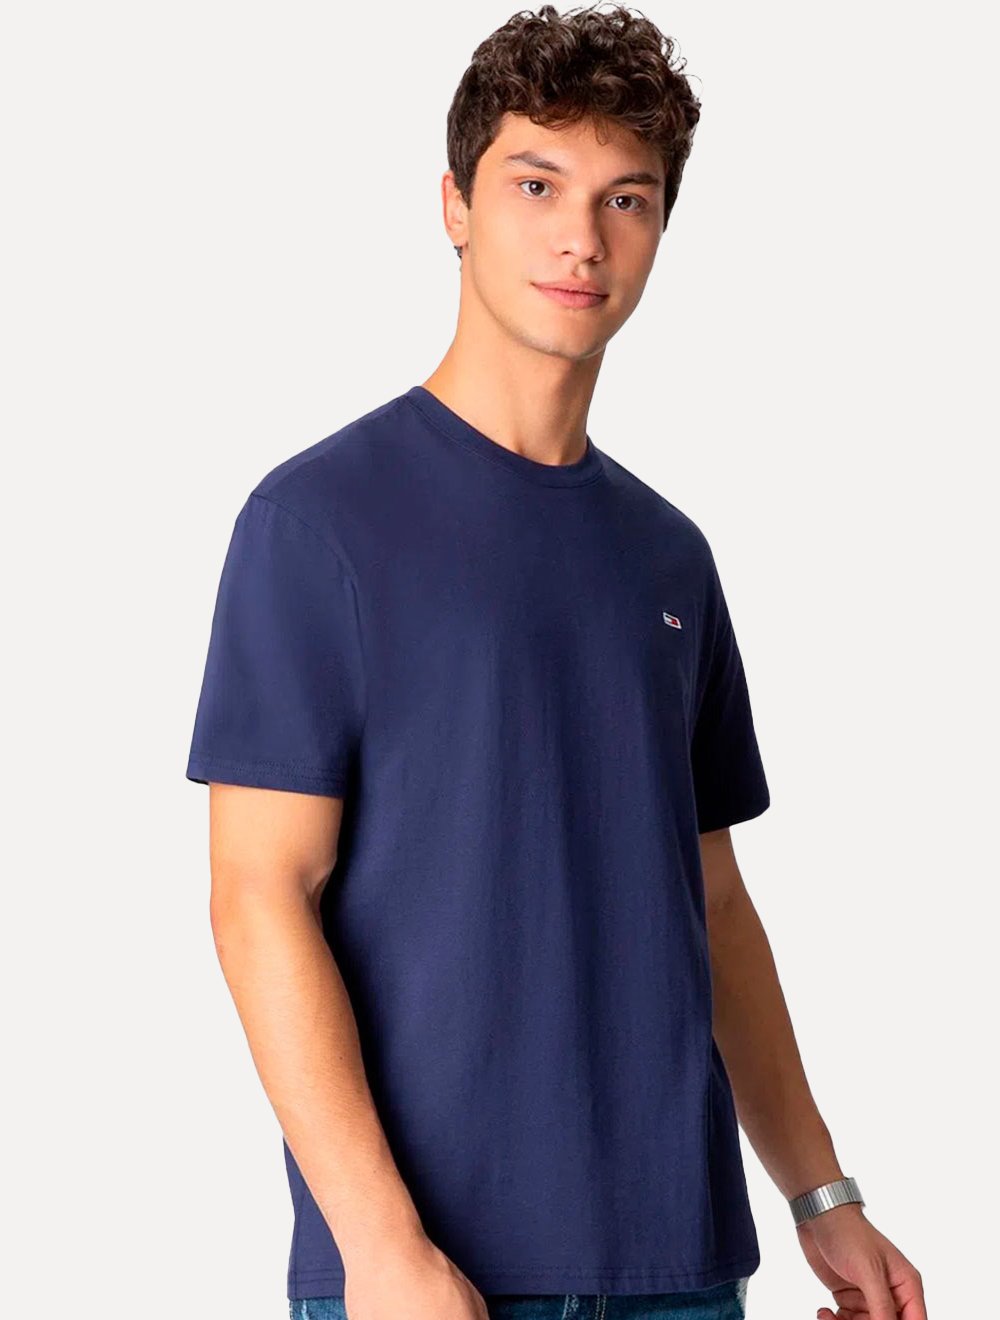 Camiseta Tommy Jeans Masculina Slim C-Neck Flag Azul Marinho